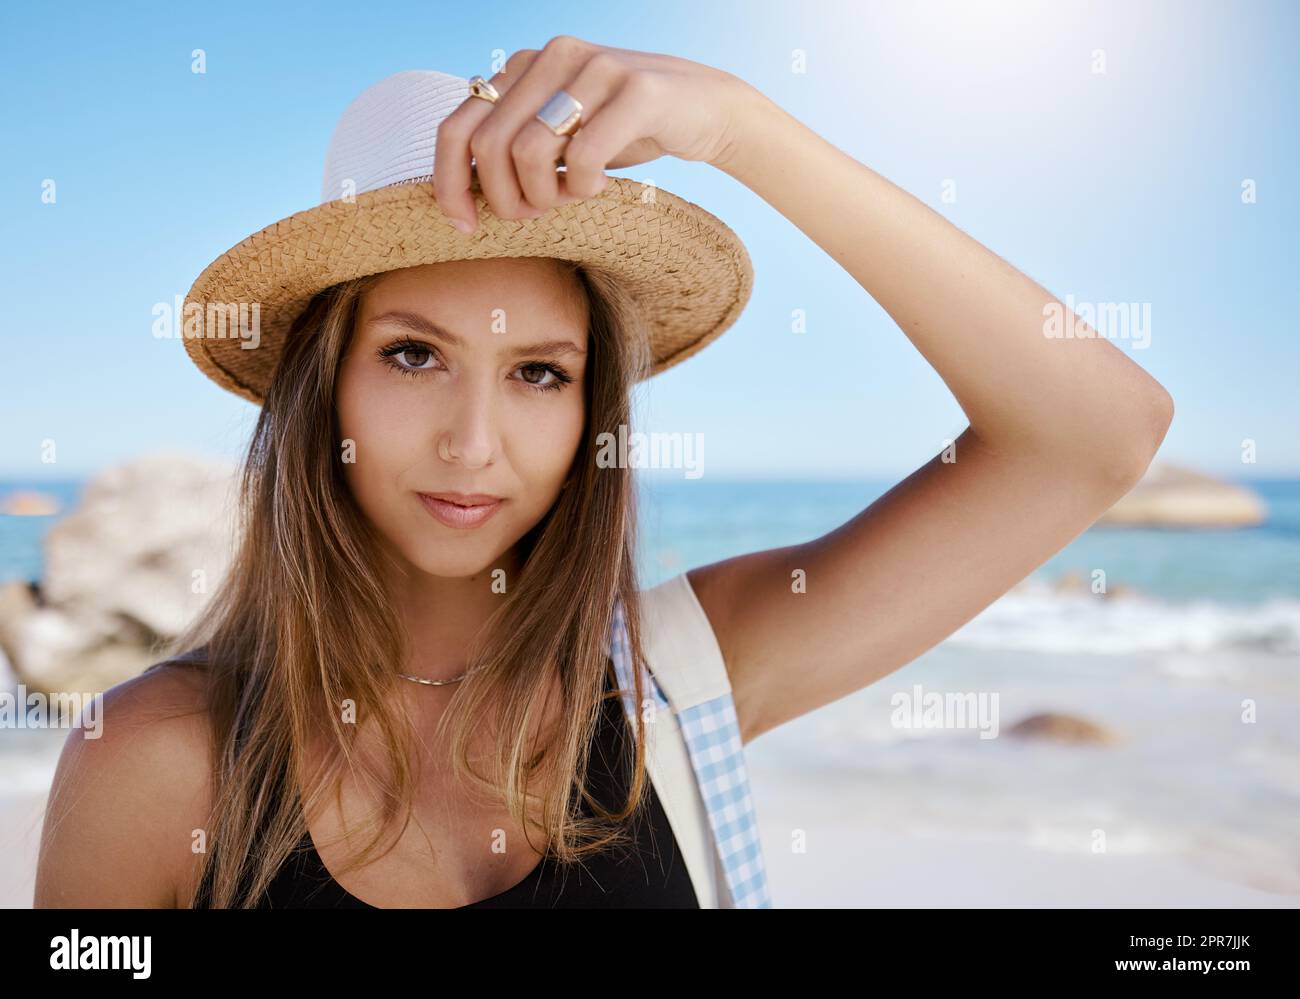 Eine wunderschöne junge weiße Frau, die sich am Strand entspannt. Genießen Sie einen Sommerurlaub oder einen Urlaub im Freien im Sommer. Sich frei nehmen und dem Alltag entfliehen. Den Tag alleine draußen zu verbringen Stockfoto